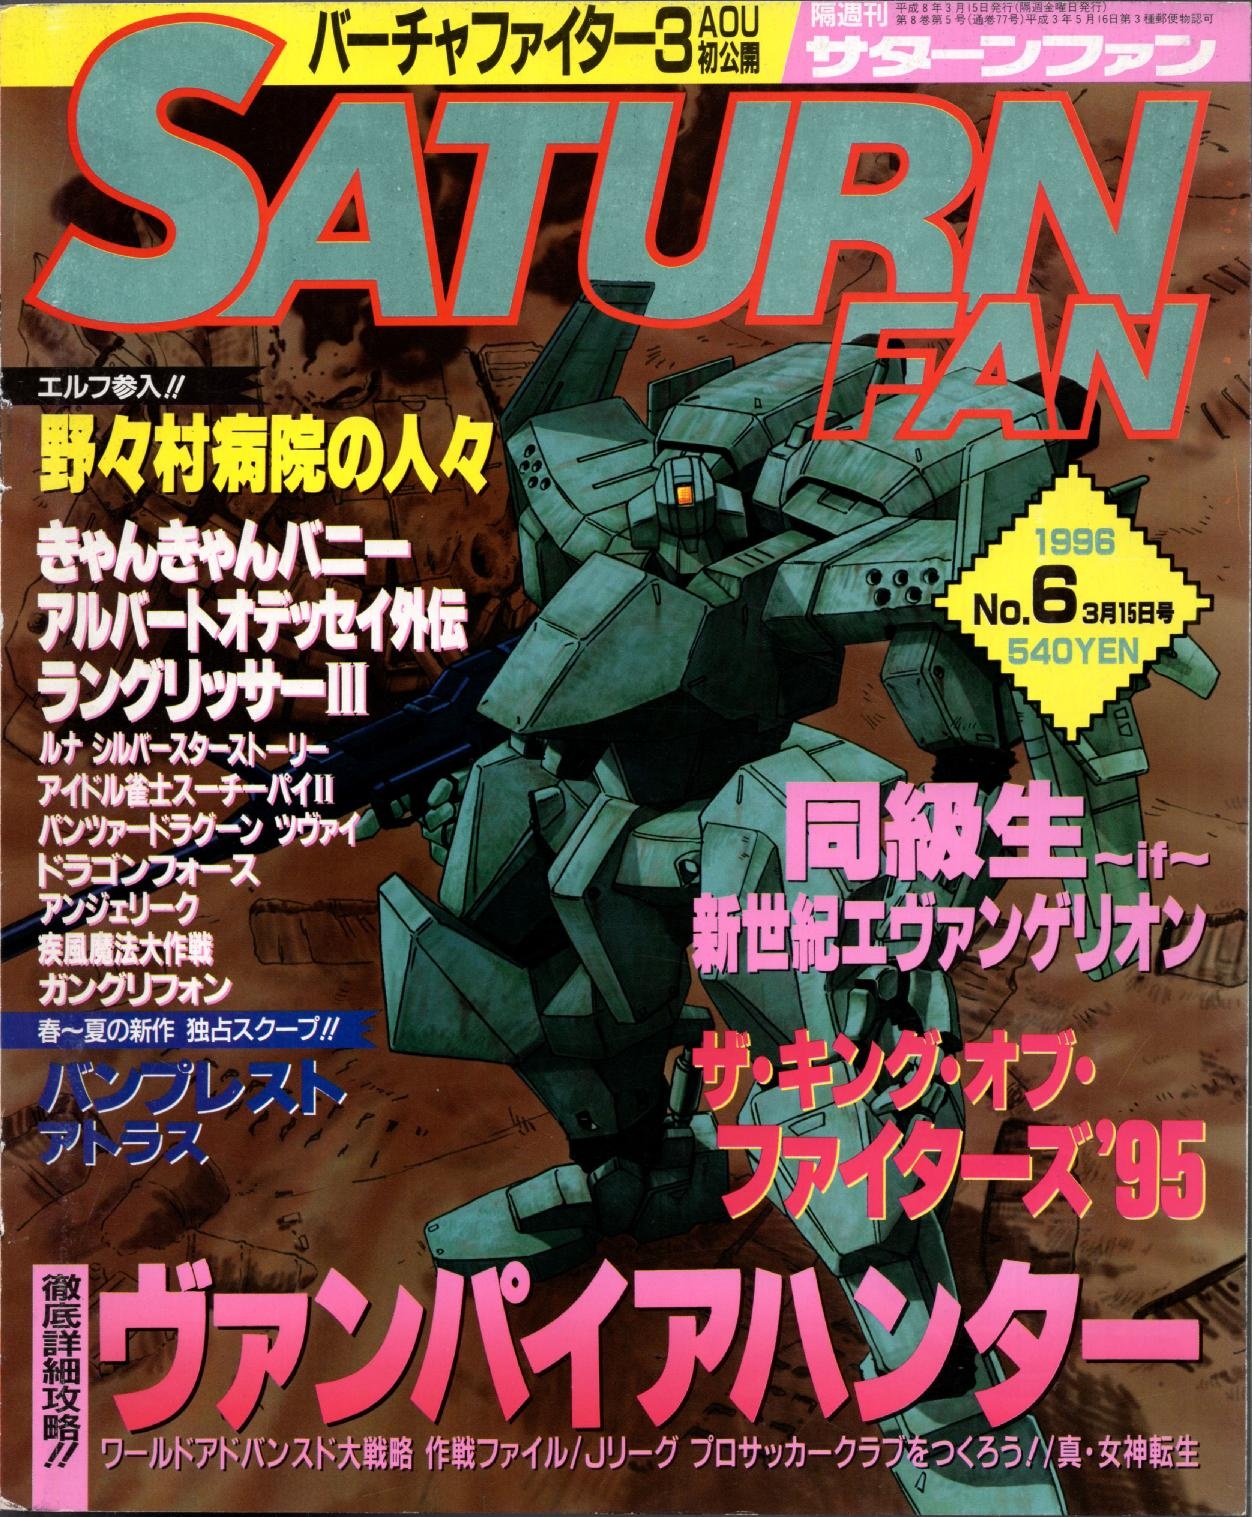 SaturnFan JP 1996-06 19960315.pdf